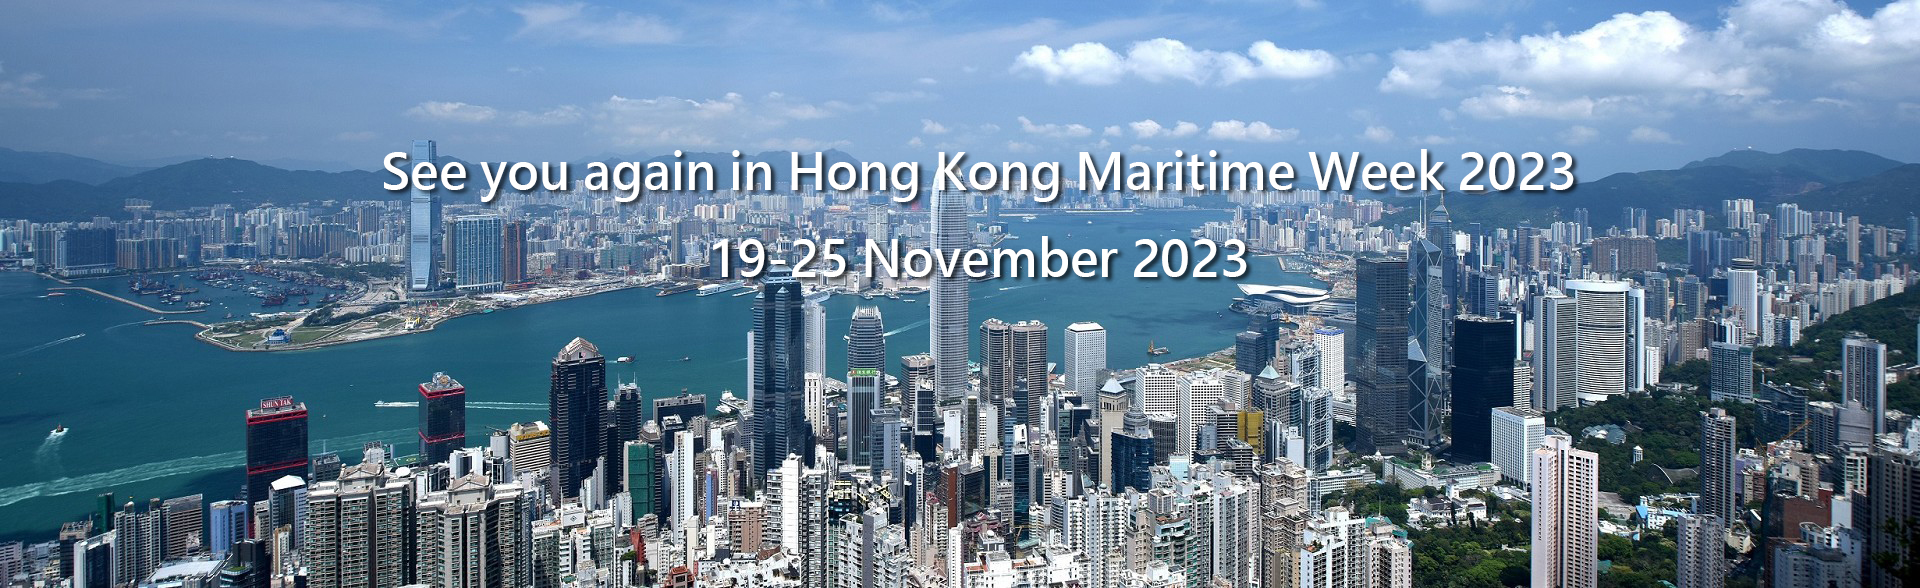 See you again in Hong Kong Maritime Week 2023 19-25 November 2023